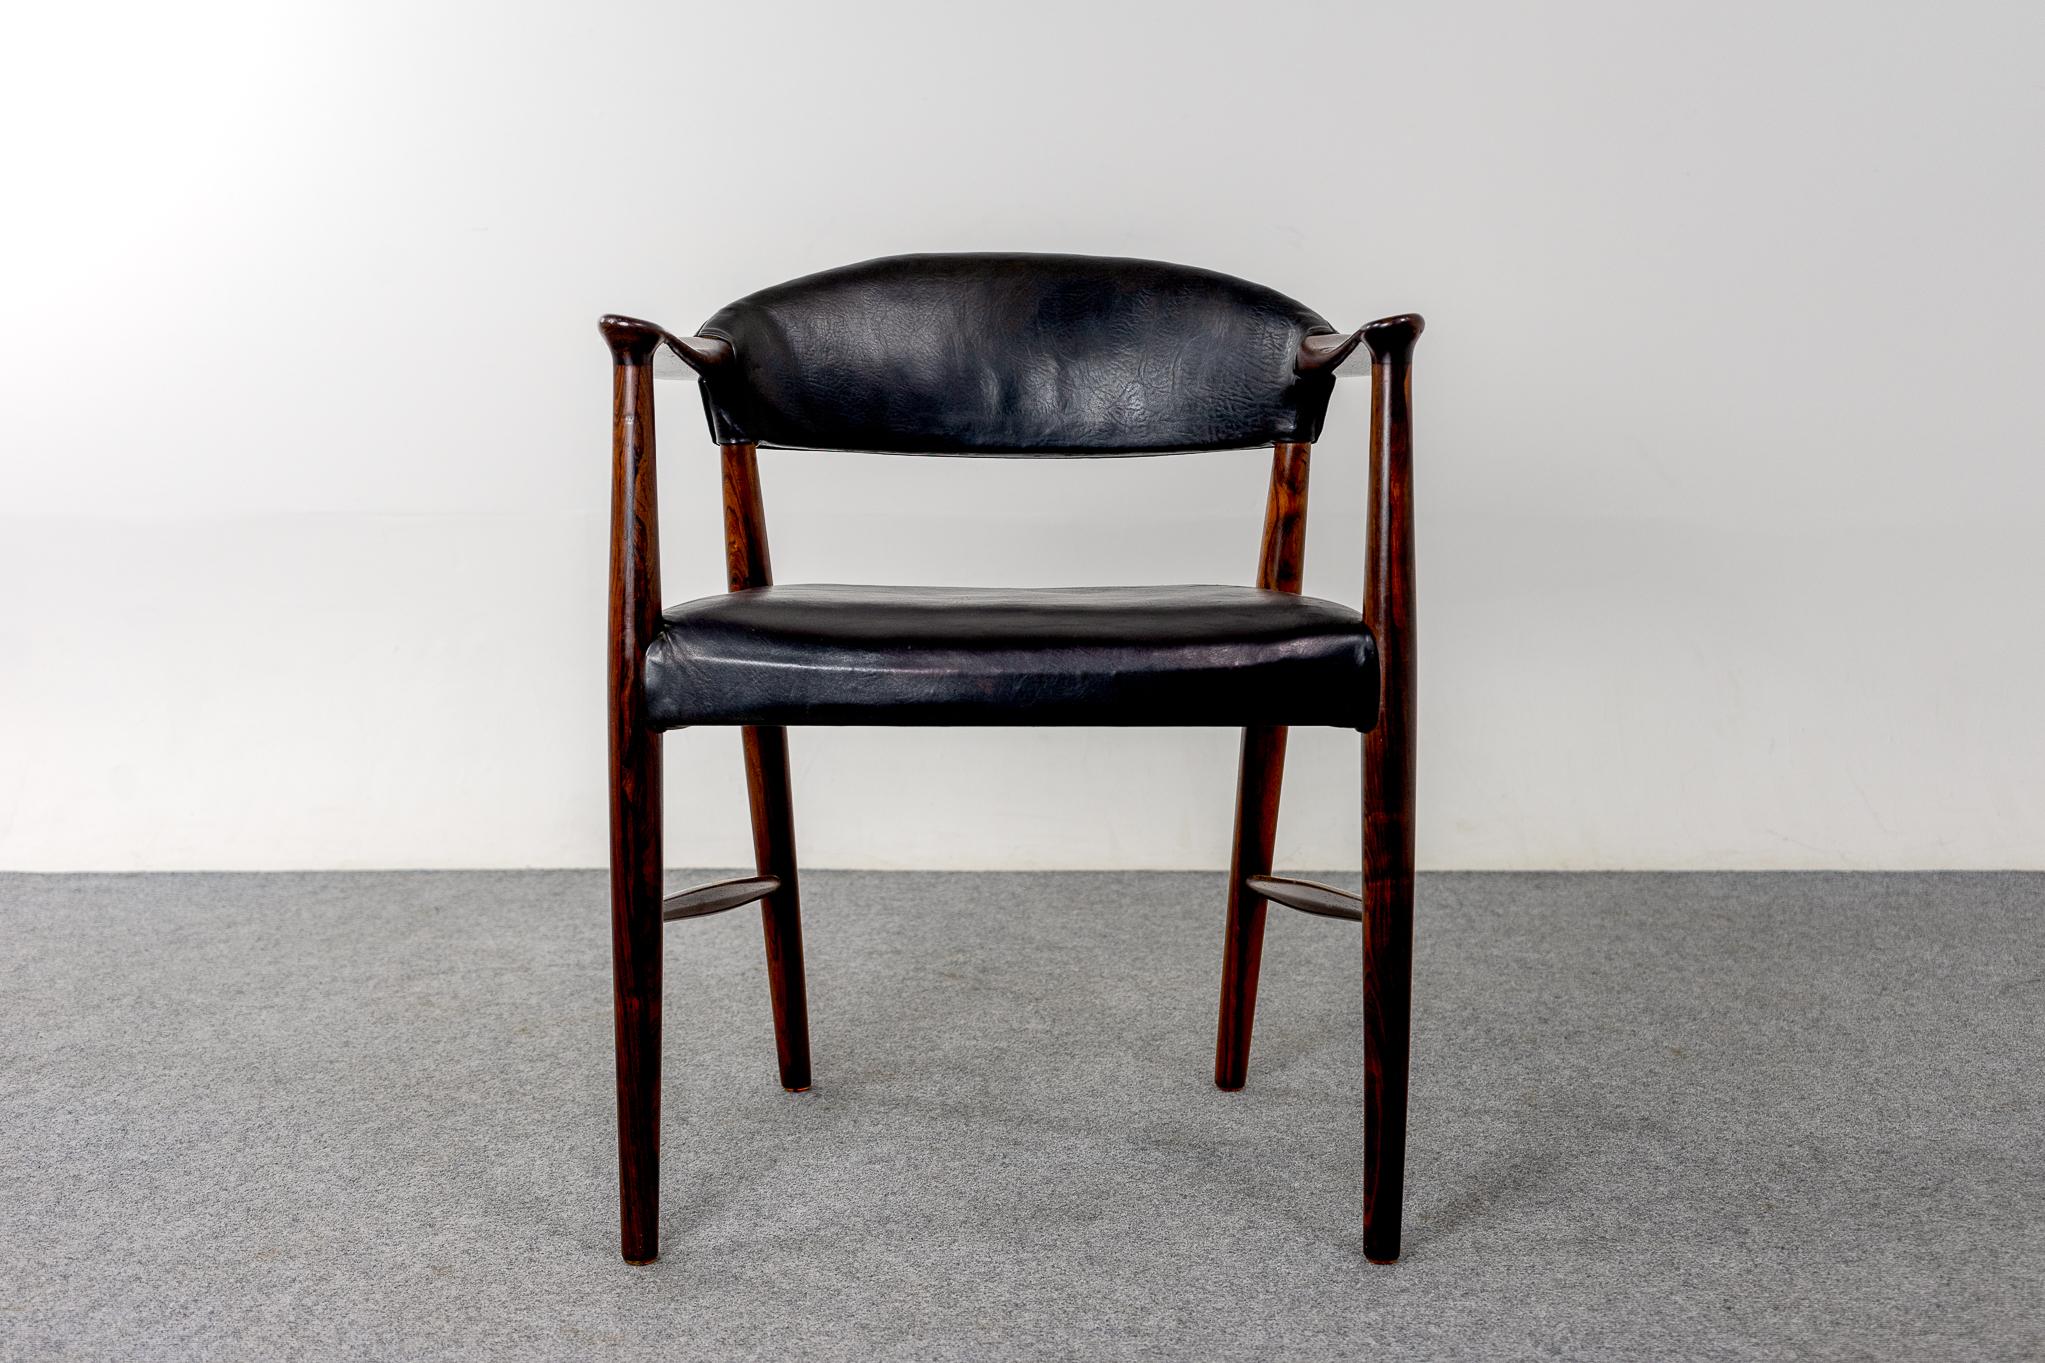 Dänischer Sessel aus Rosenholz und Leder von Kurt Olsen, um 1960. Stabiler Massivholzrahmen mit atemberaubender Maserung auf dem geschnitzten Rahmen. Komfort ohne großen Fußabdruck! 

Bitte erkundigen Sie sich nach Fern- und Auslandsversand.